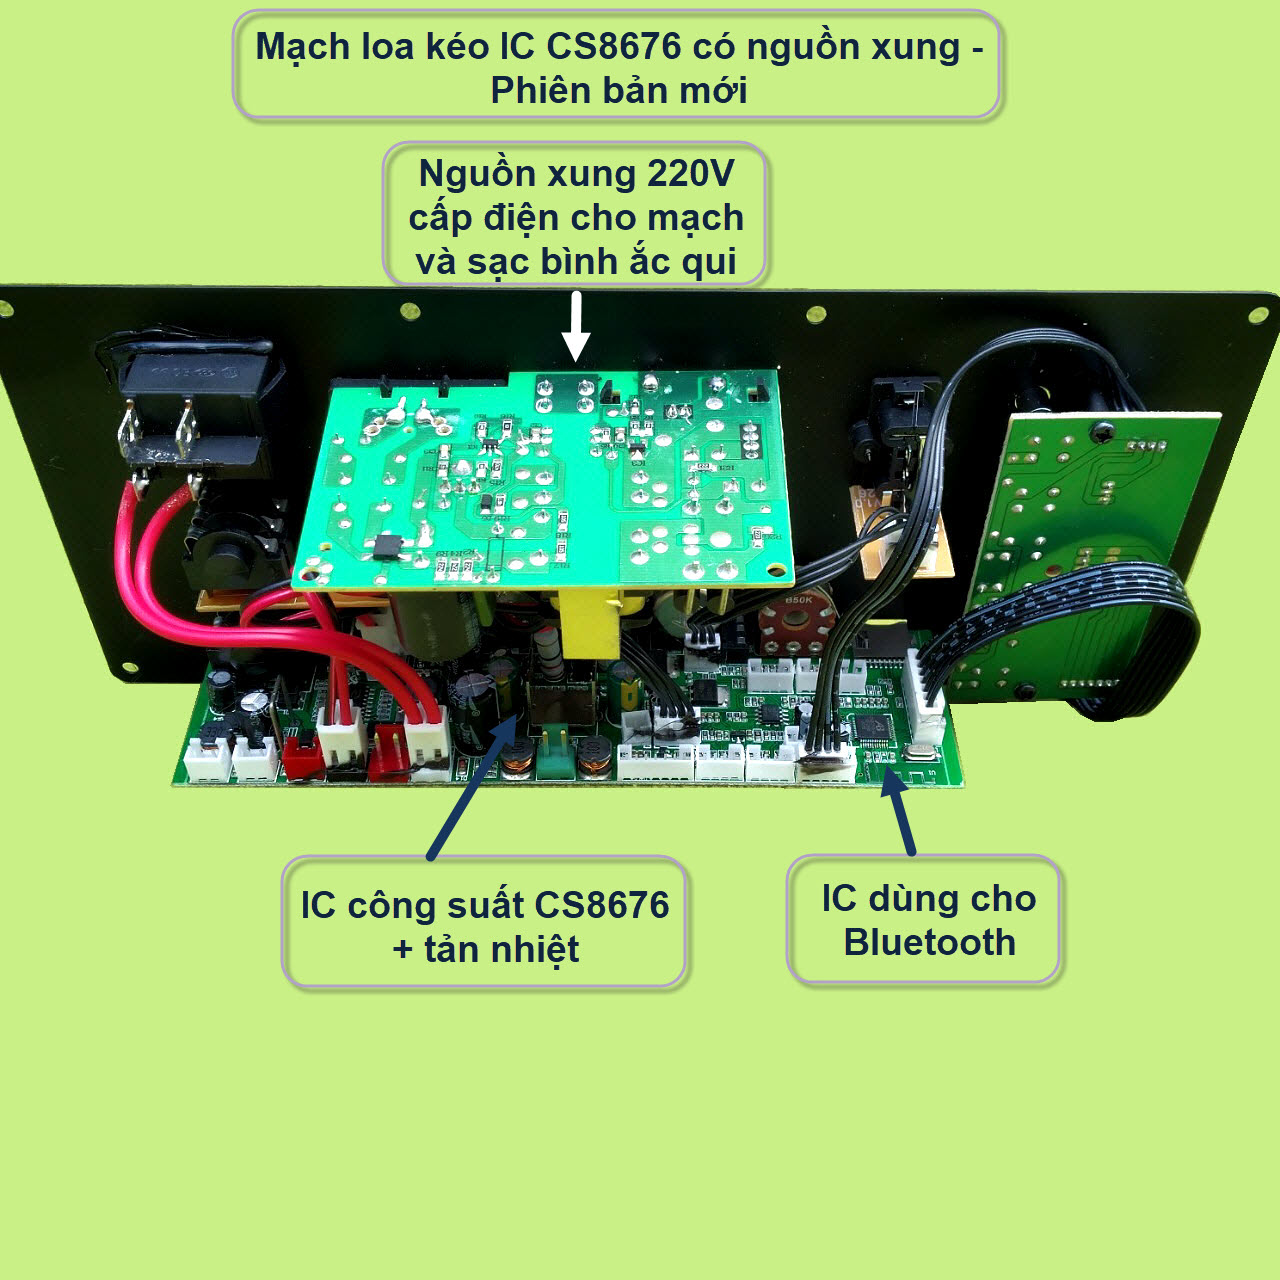 Mạch loa kéo CS8676 có nguồn xung kèm Micro đơn hoặc Micro đôi – Bluetooth